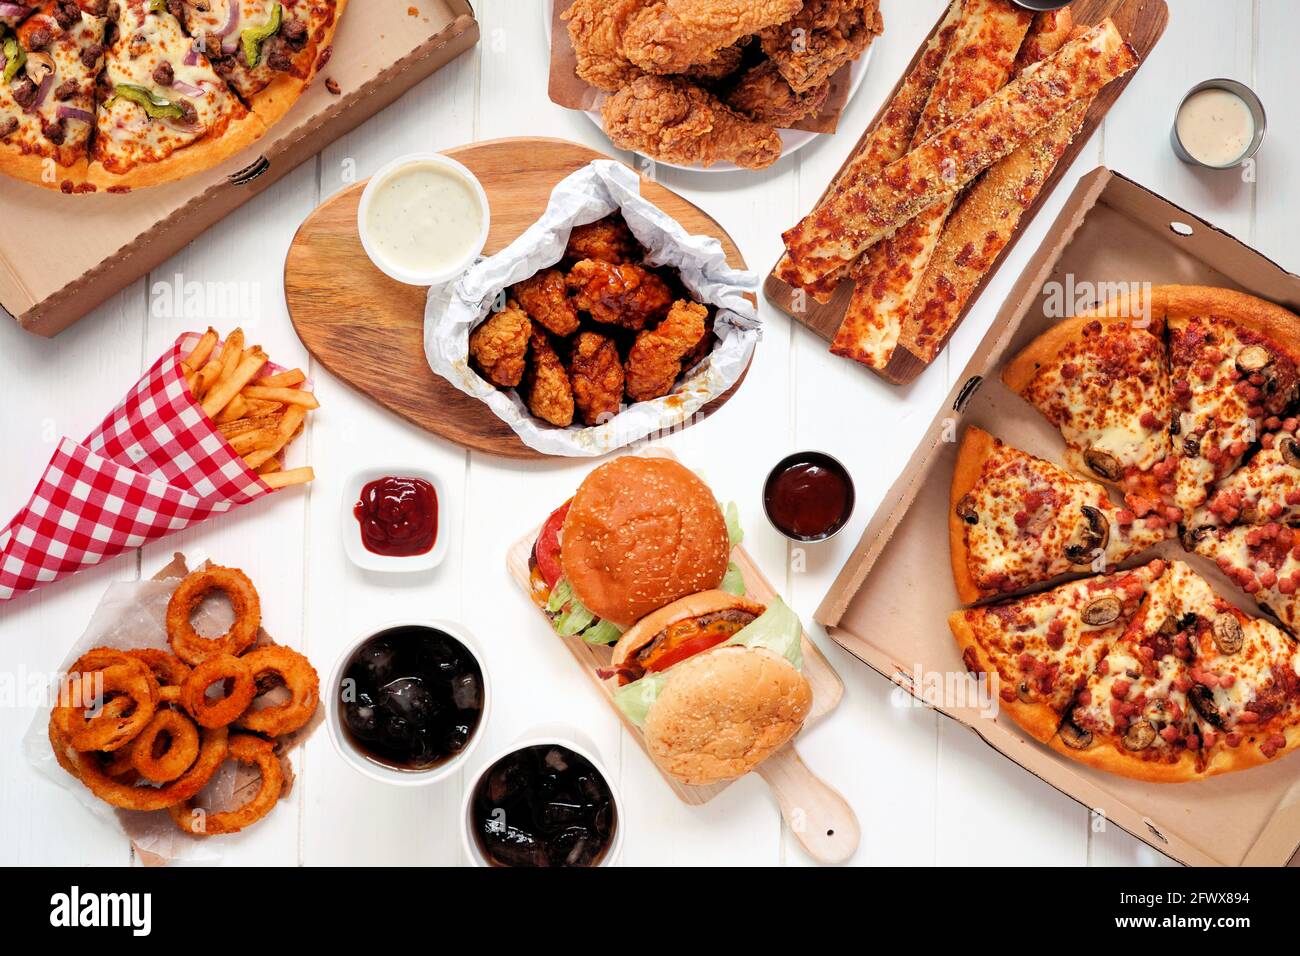 Buffet-Tisch mit Speisen zum Mitnehmen oder Anliefern. Pizza, Hamburger, gebratenes Huhn und Beilagen. Draufsicht auf weißem Holzhintergrund. Stockfoto